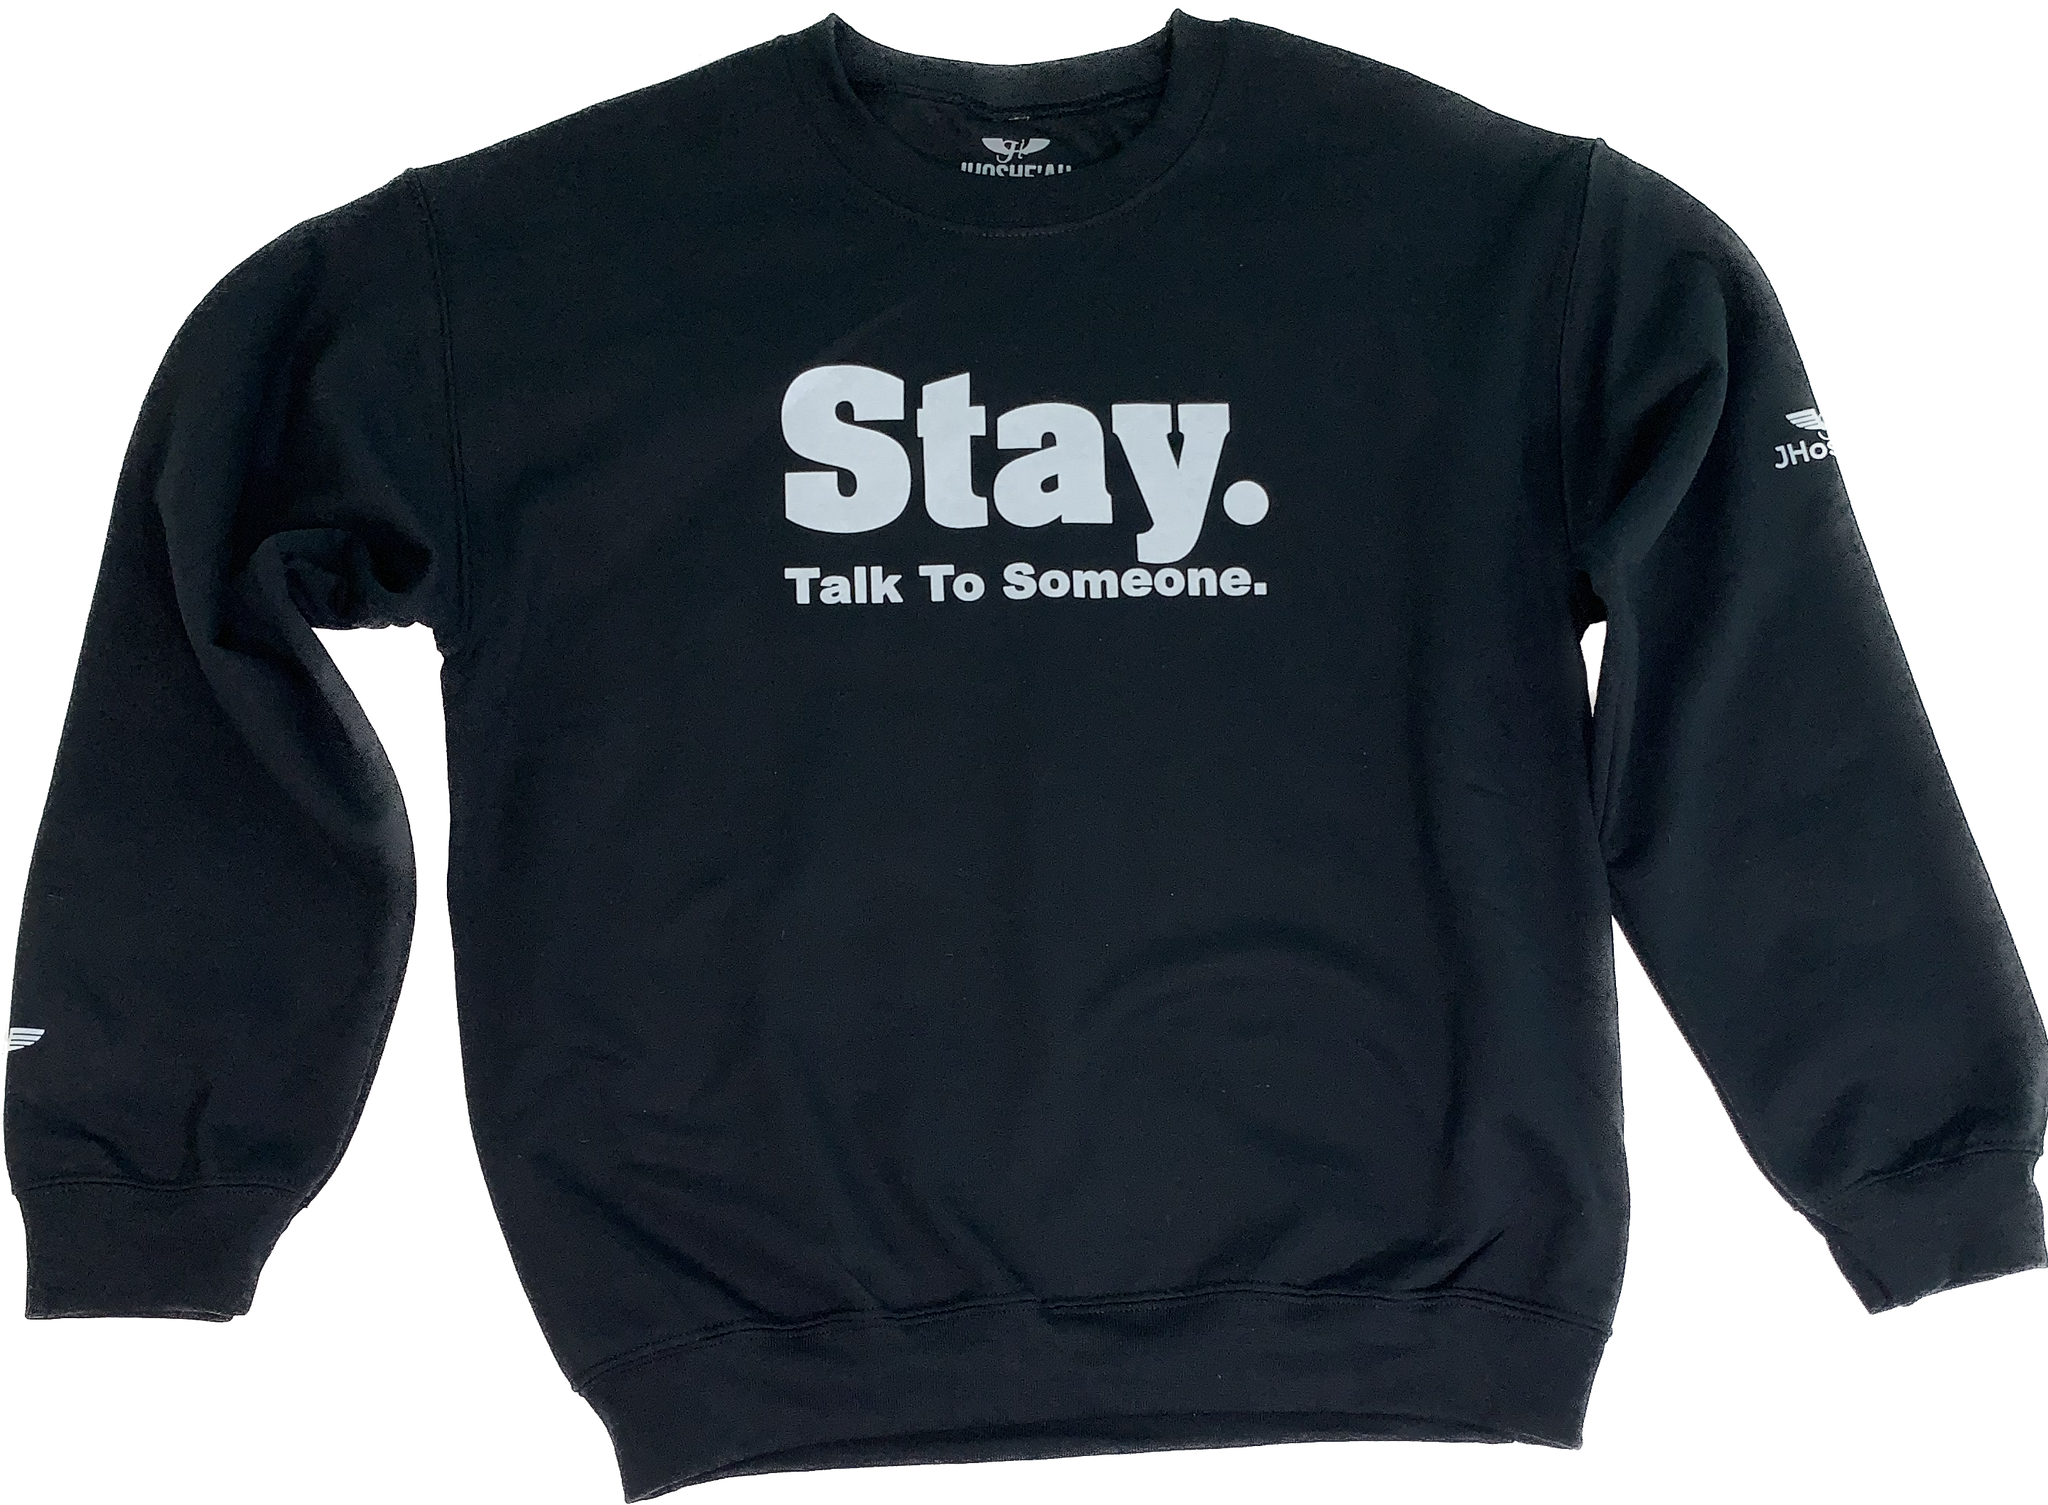 Crewneck “STAY” Sweatshirt